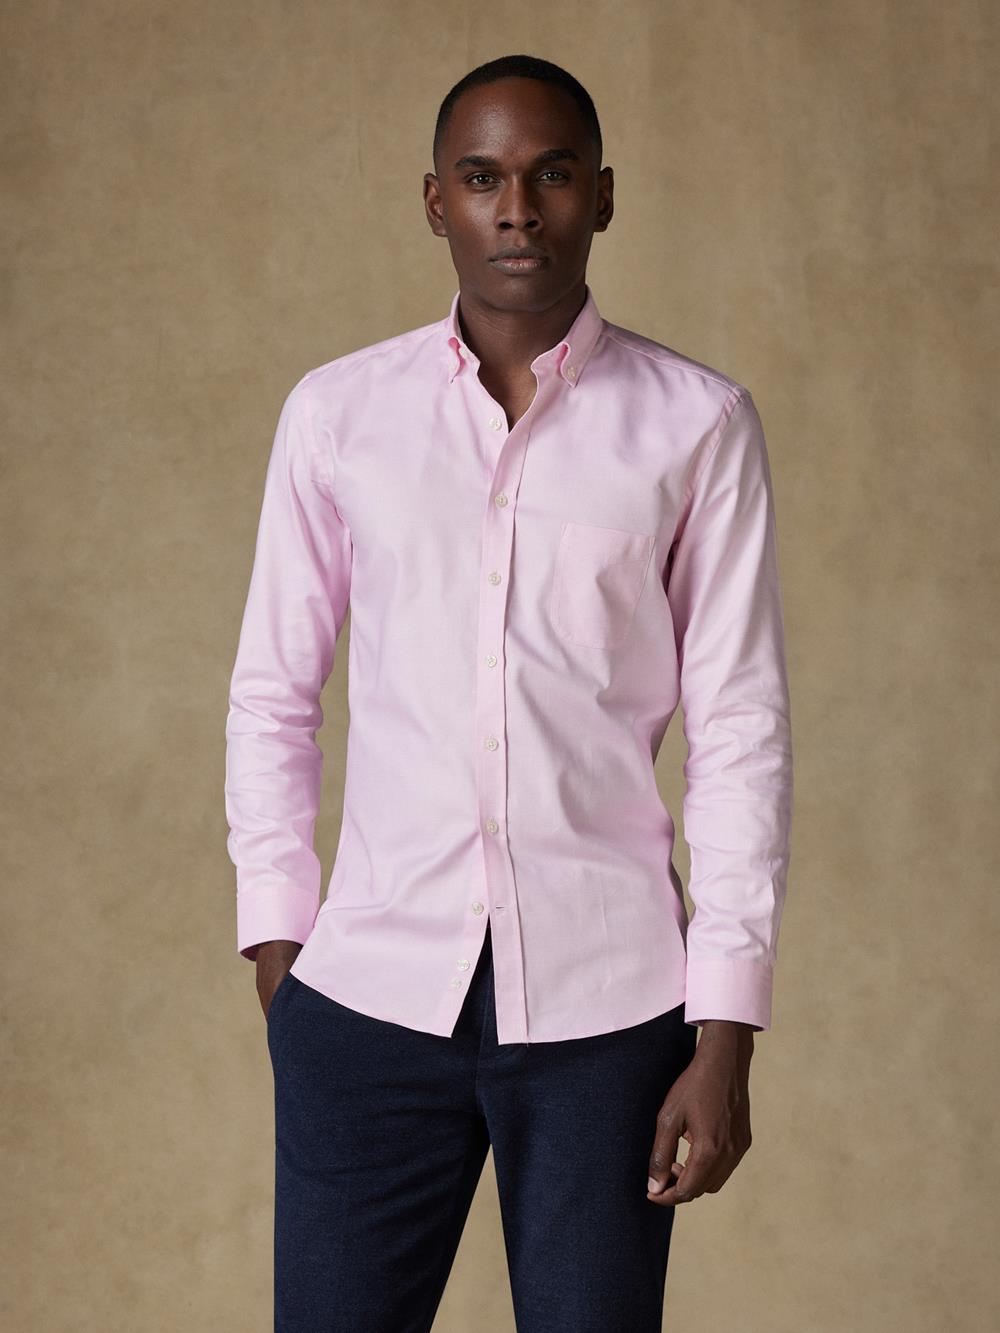 Hemd aus rosa Zopfmuster - Buttondown Kragen